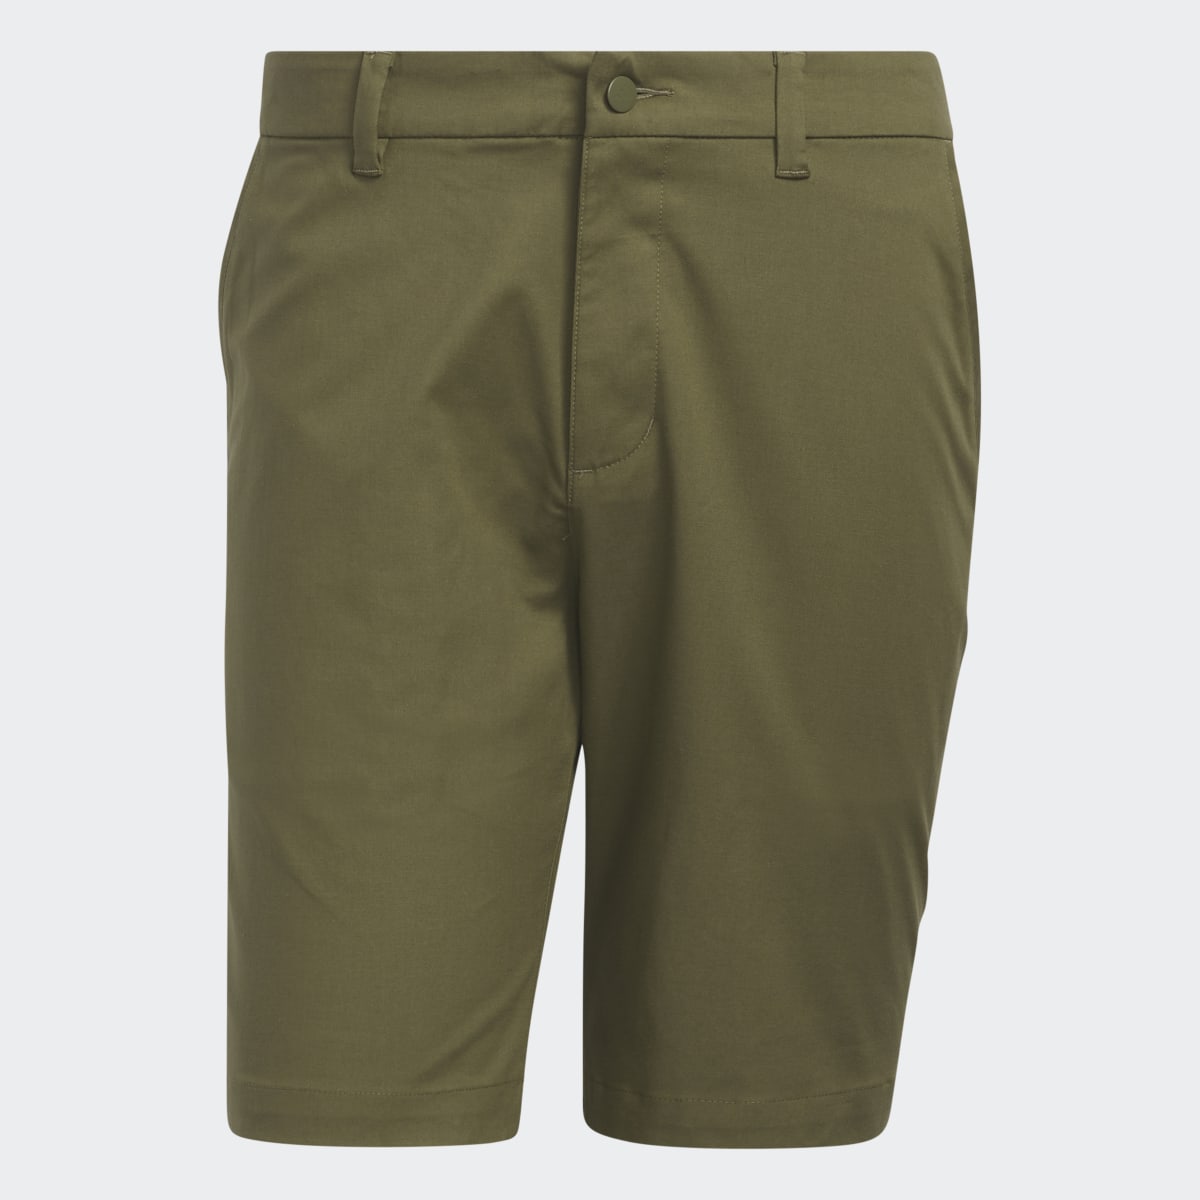 Adidas Go-To 9-Inch Golf Shorts. 5